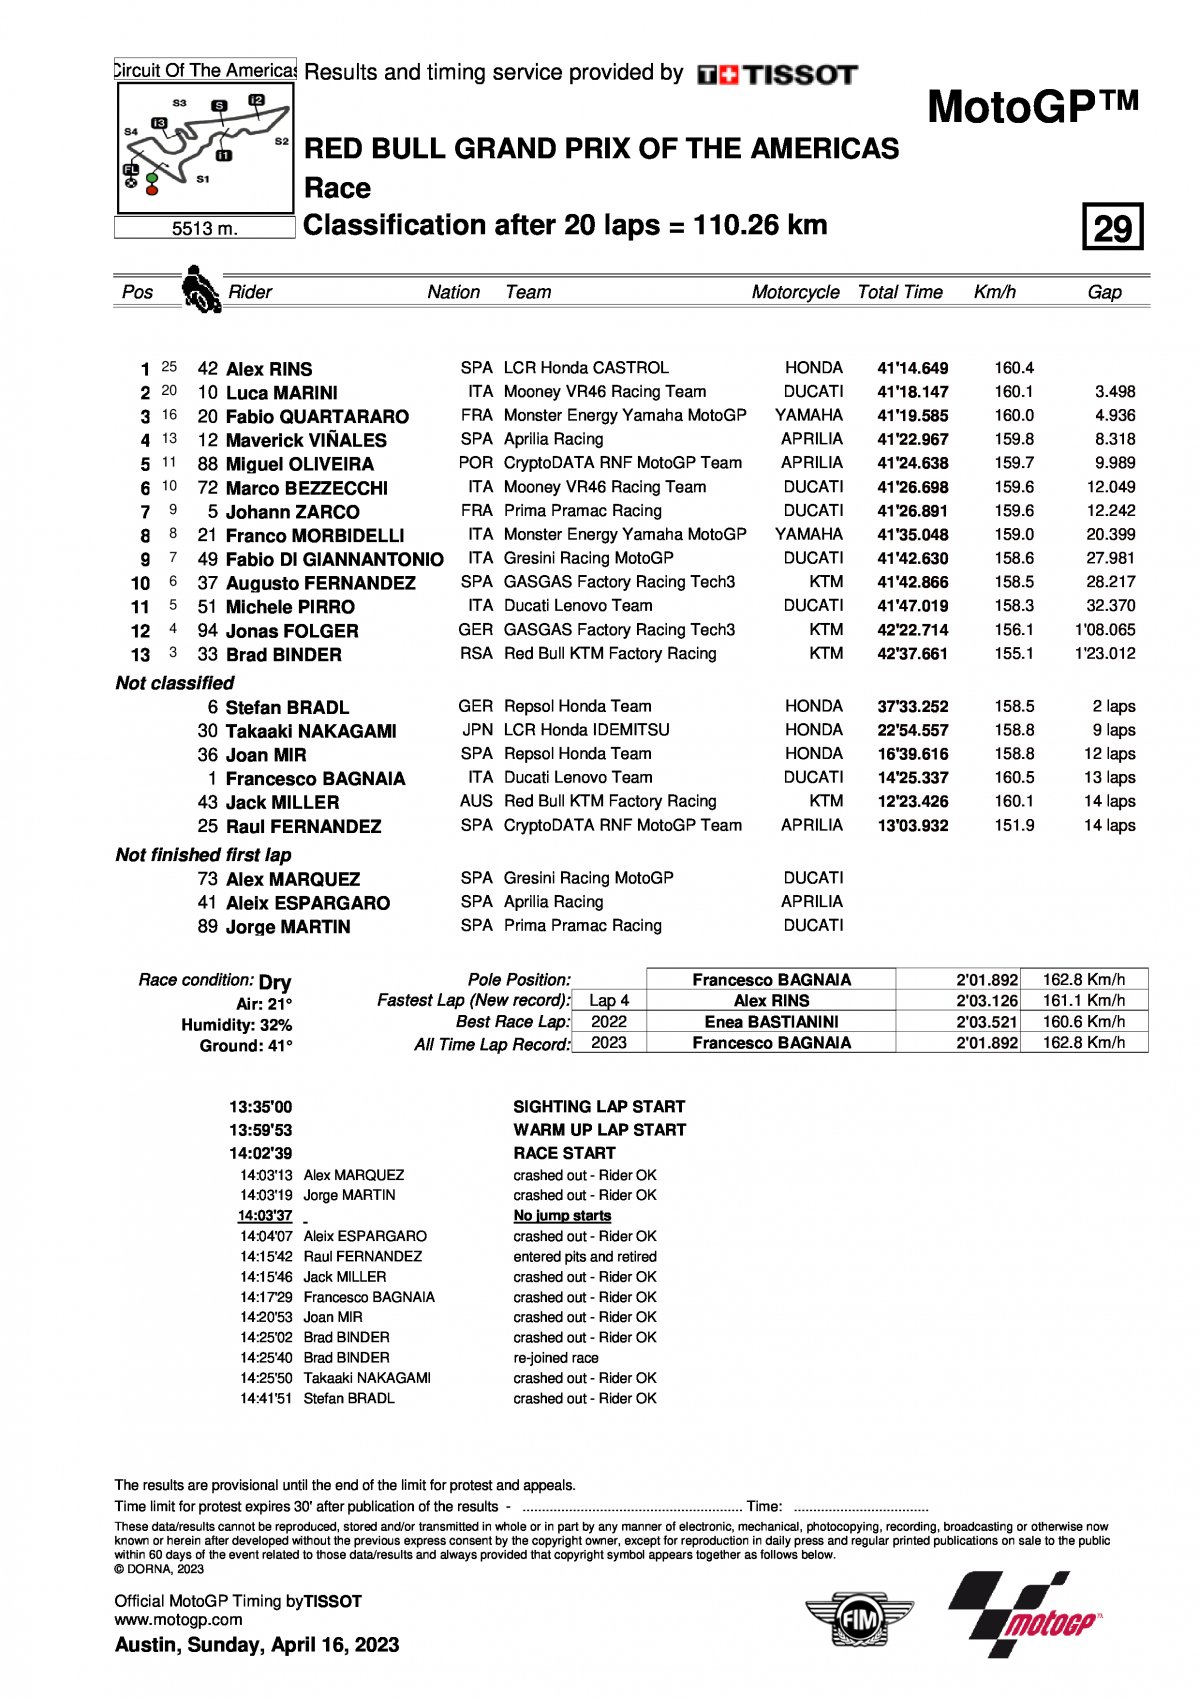 Результаты Гран-При Америк (AmericasGP) MotoGP (16/04/2023)